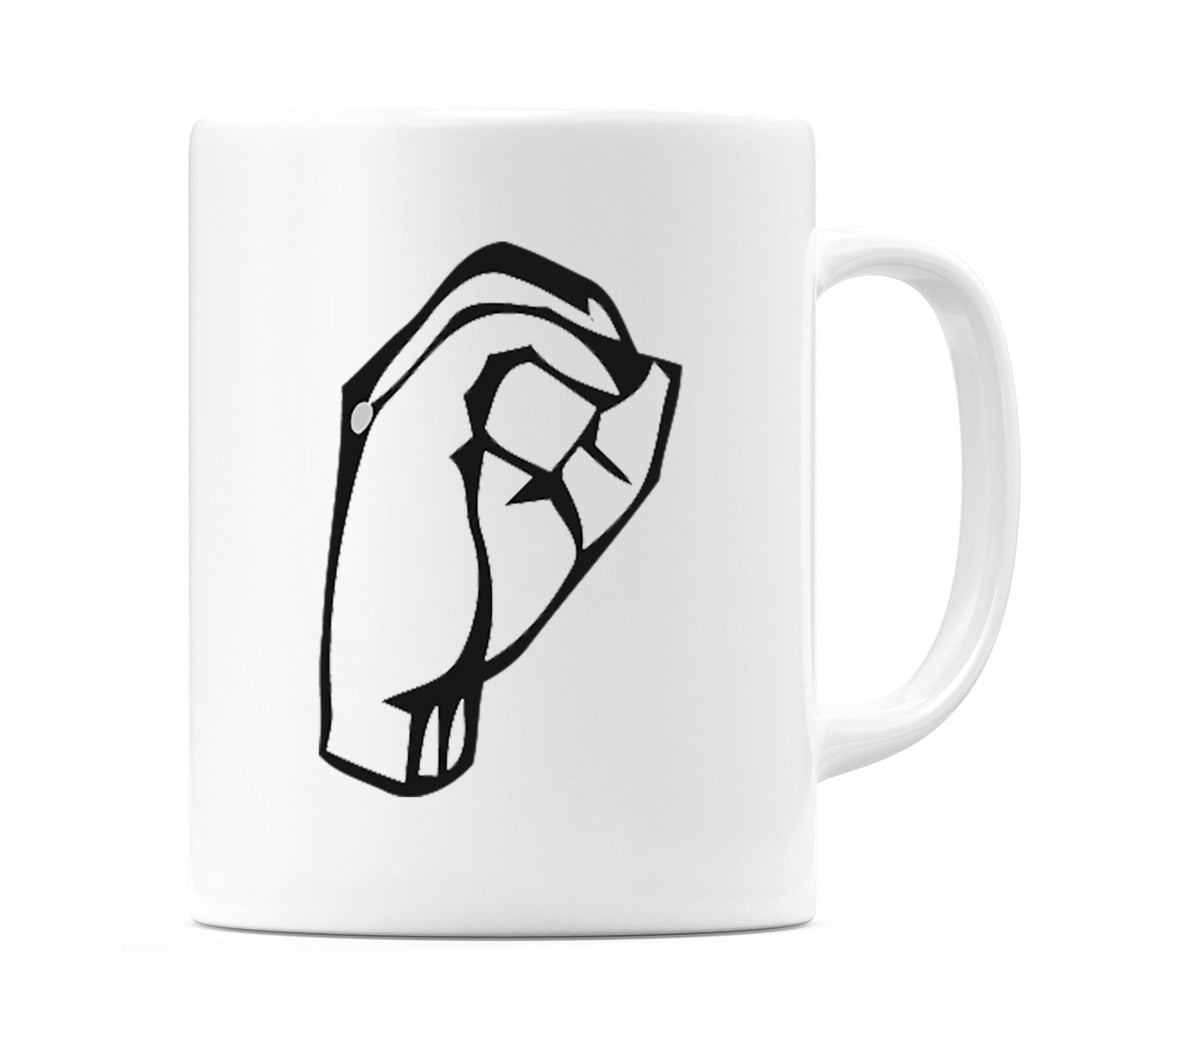 US Sign Language Number 0 Mug